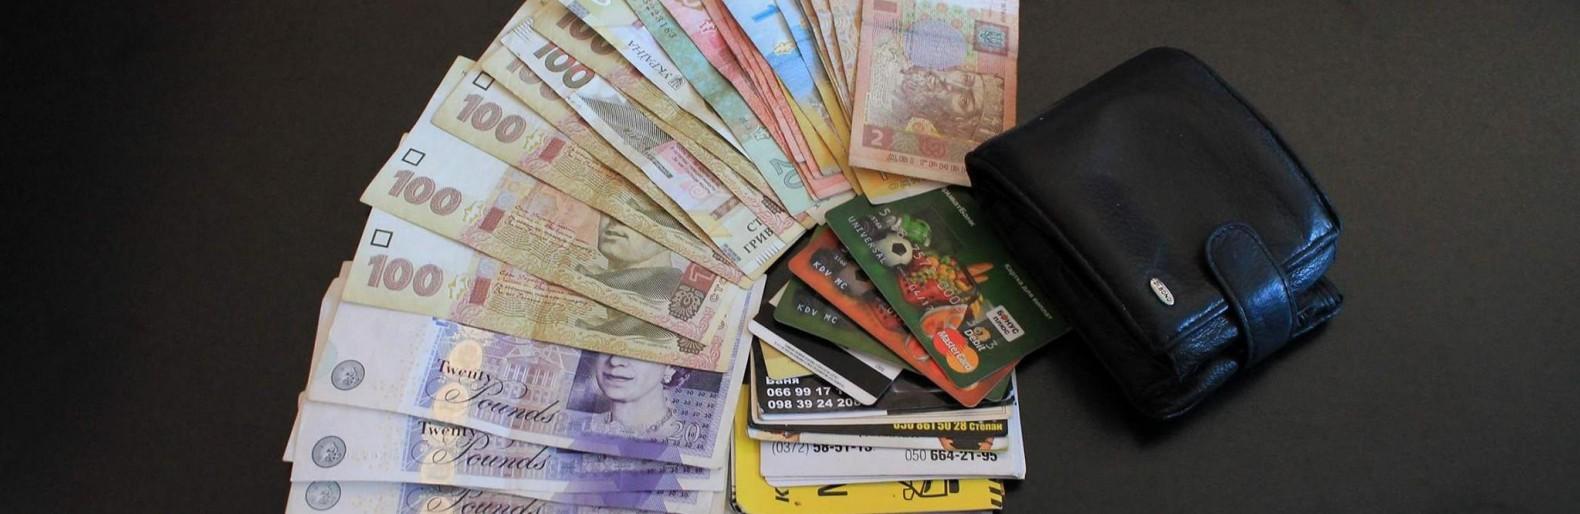 Ужгородська поліція встановила особу викрадачки гаманця з сумки клієнтки взуттєвого магазину